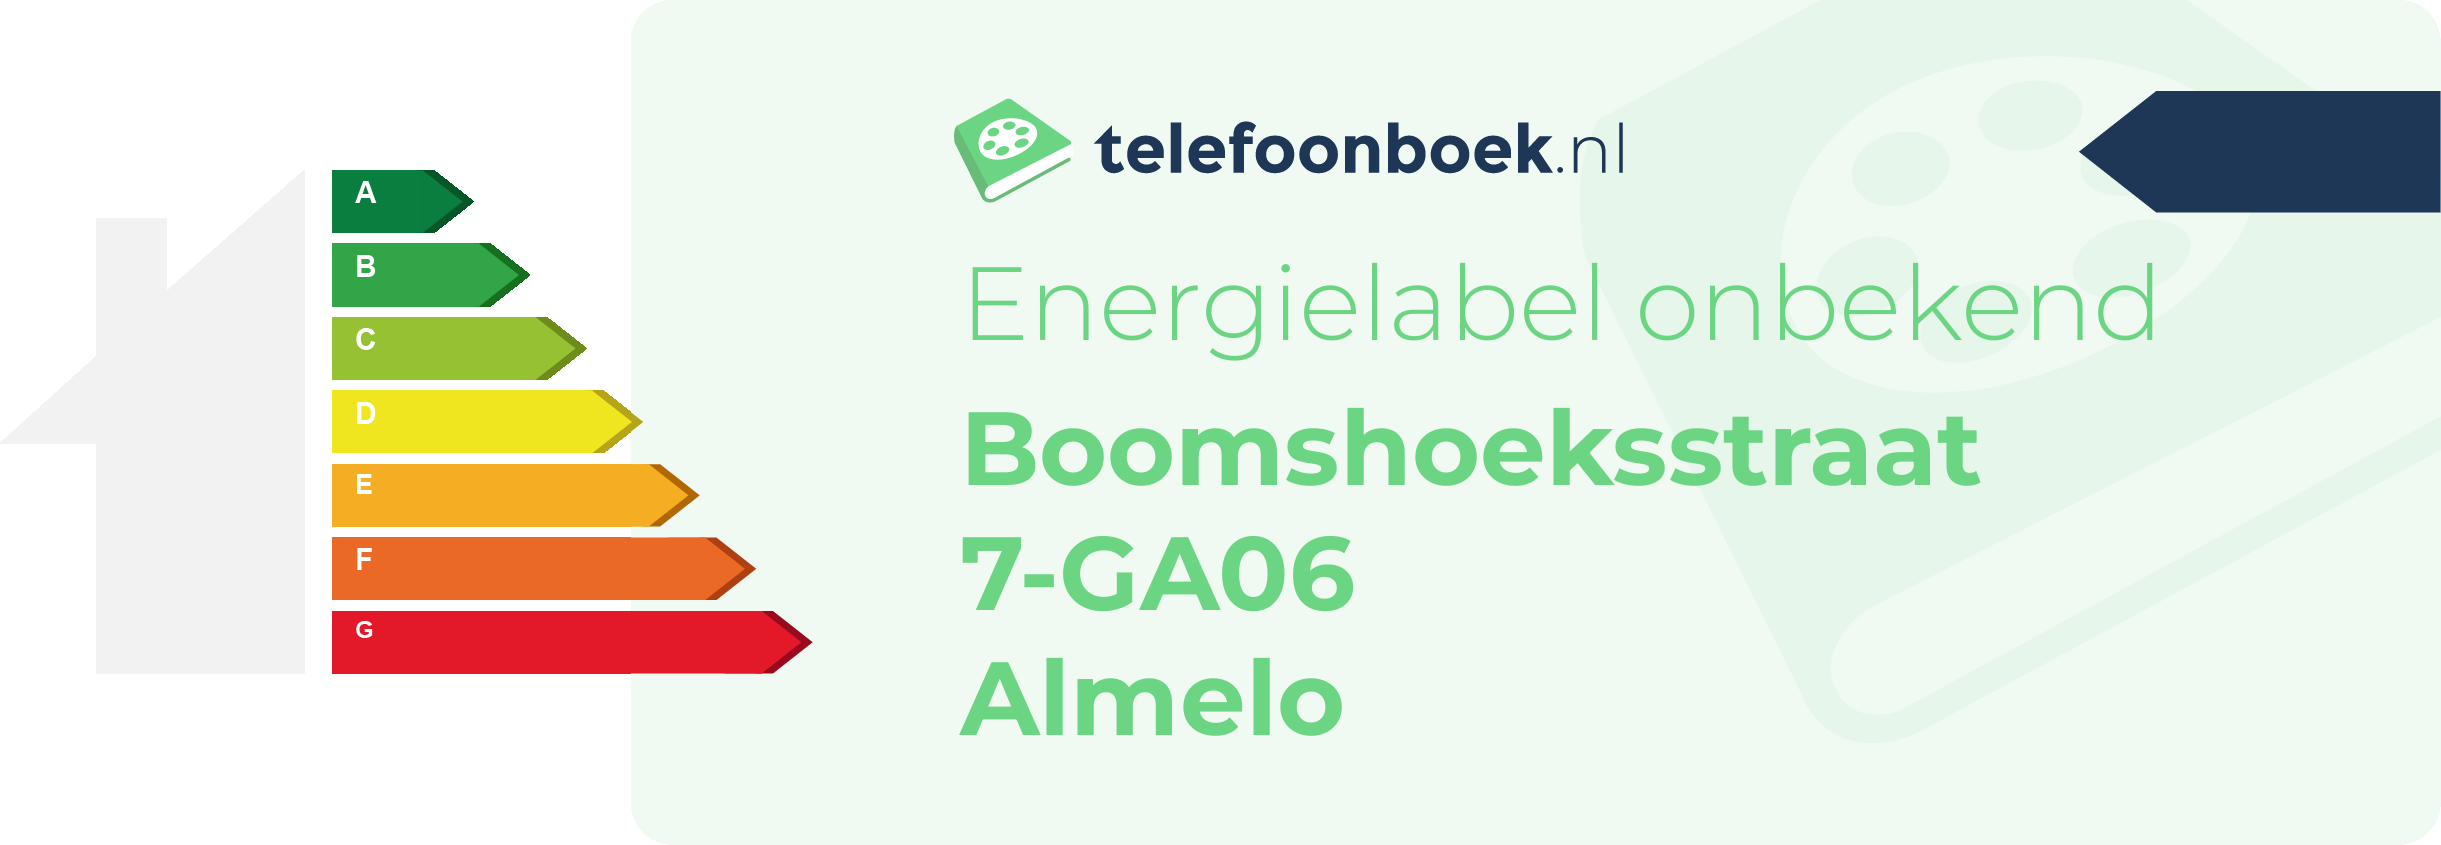 Energielabel Boomshoeksstraat 7-GA06 Almelo